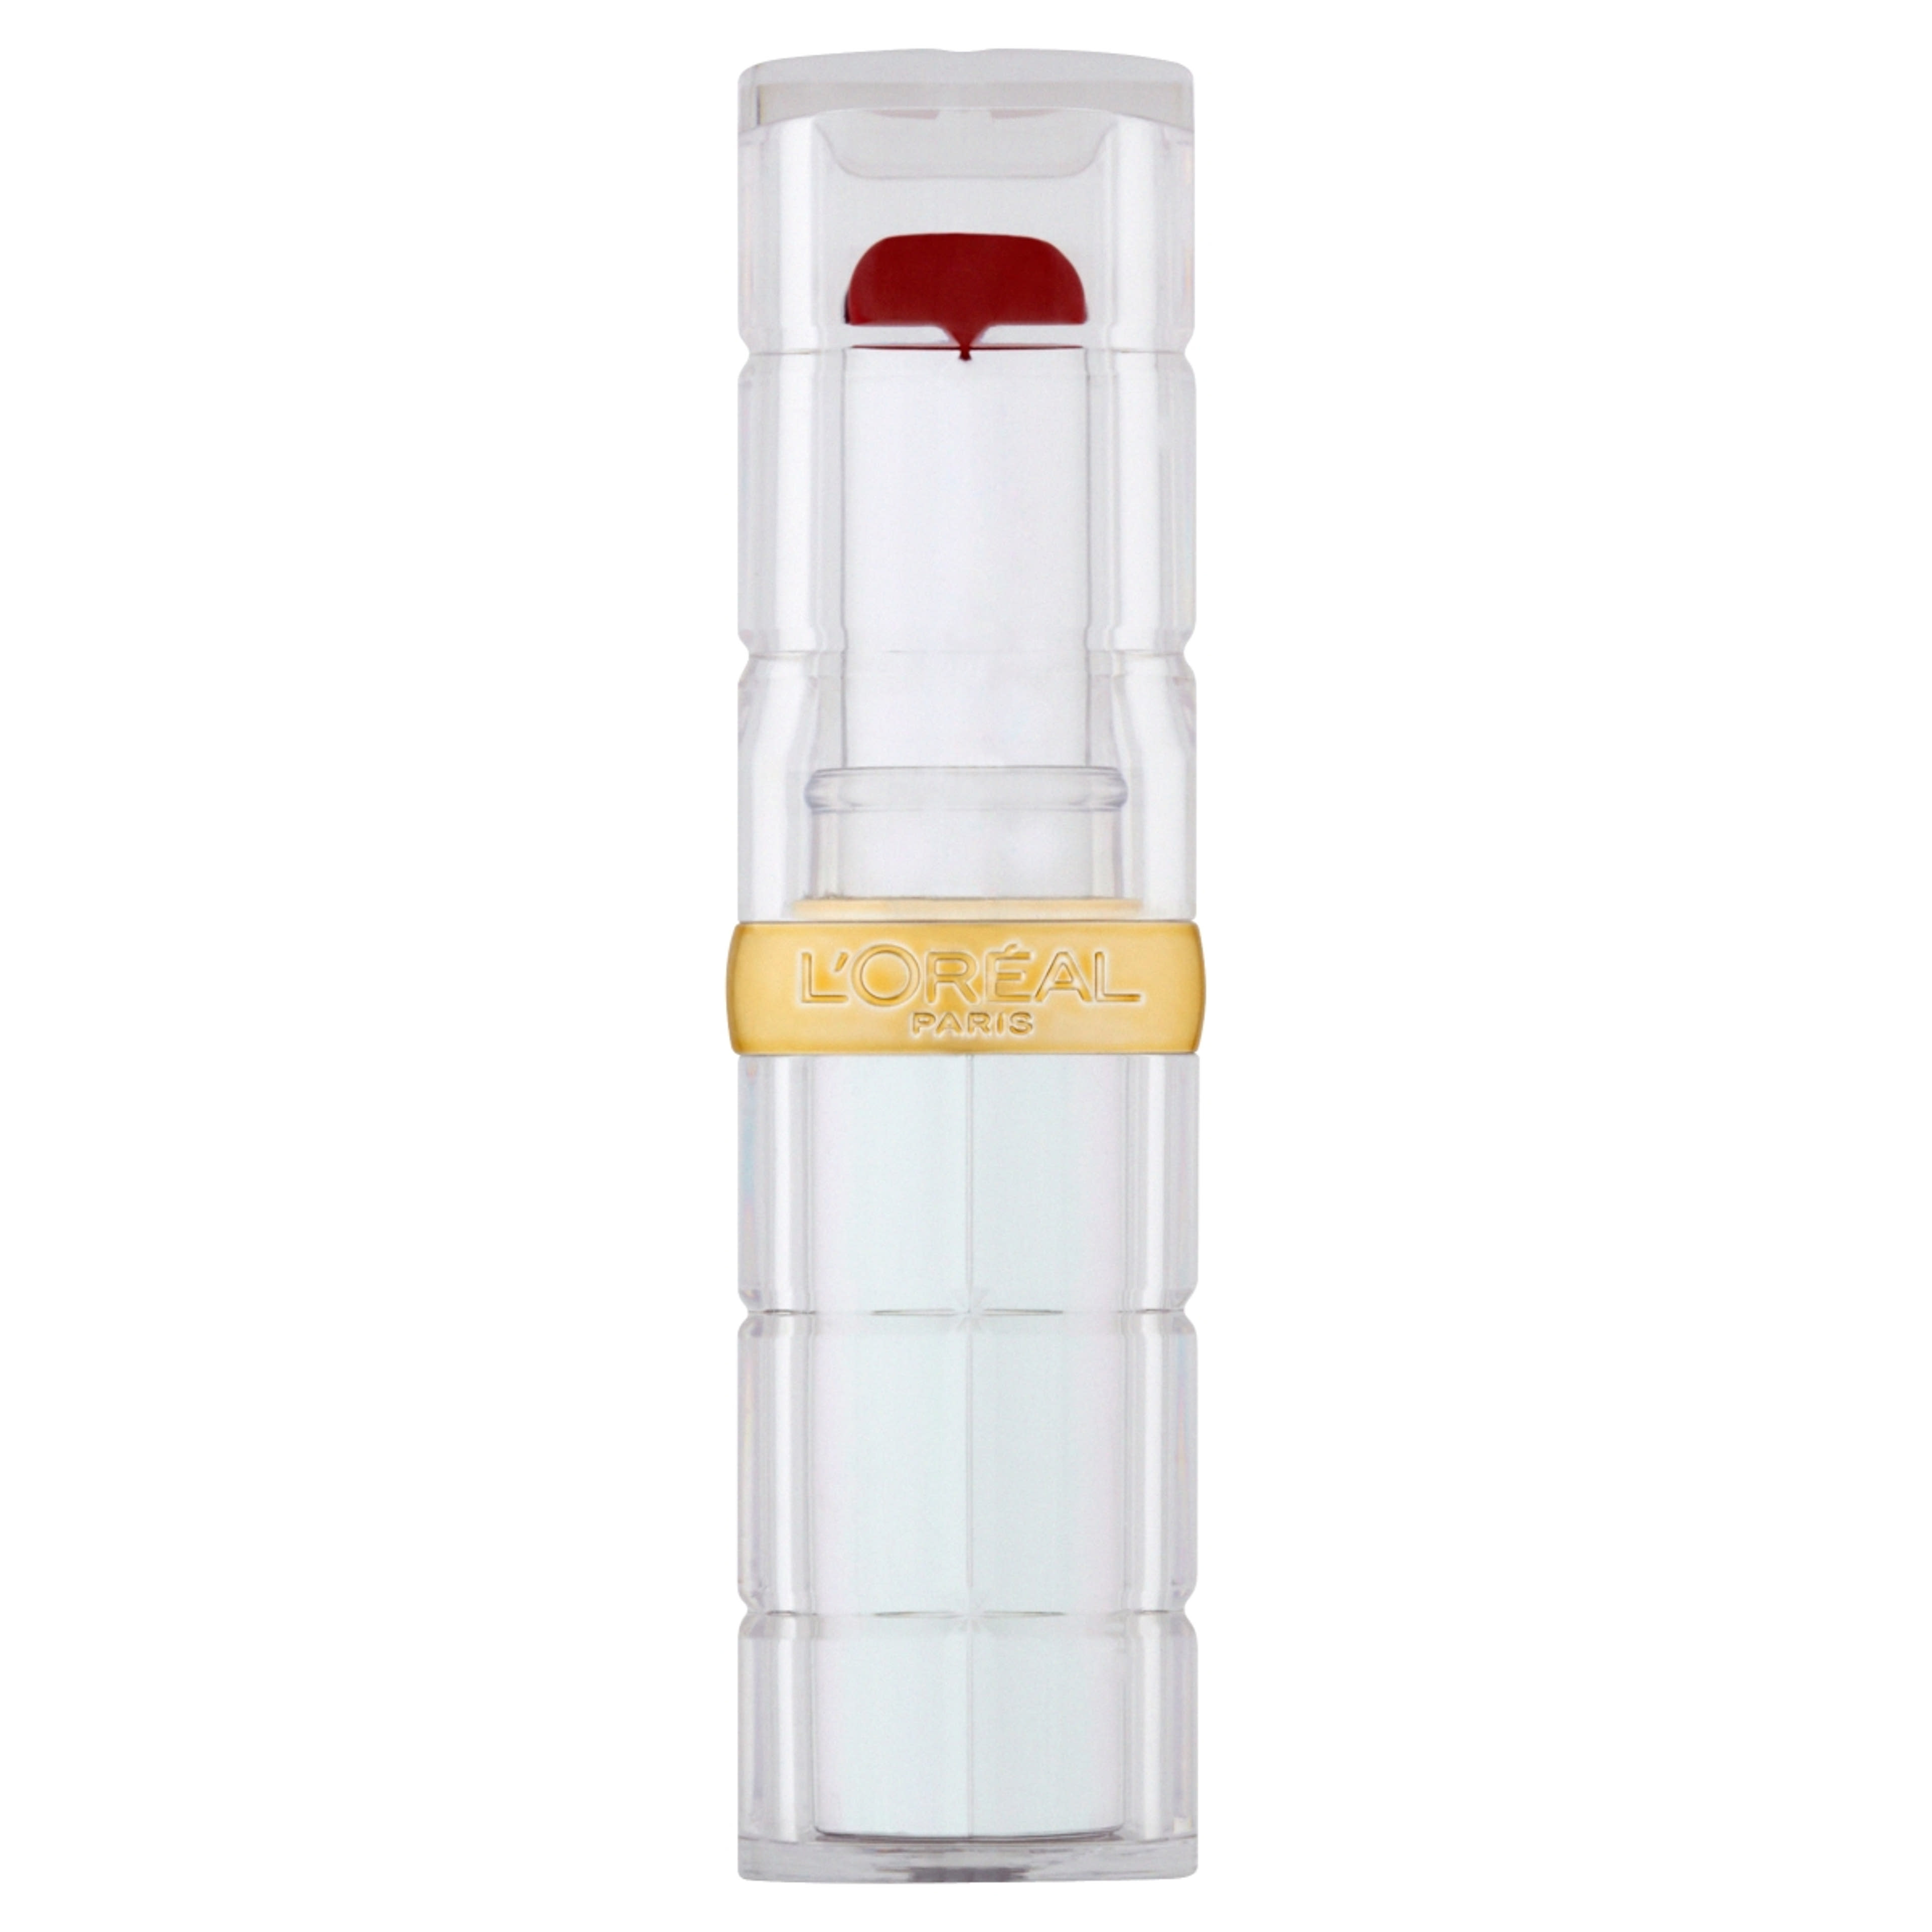 L'Oréal Paris Color Riche Shine hidratáló ajakrúzs, 350 INSANESATION rúzs - 1 db-1